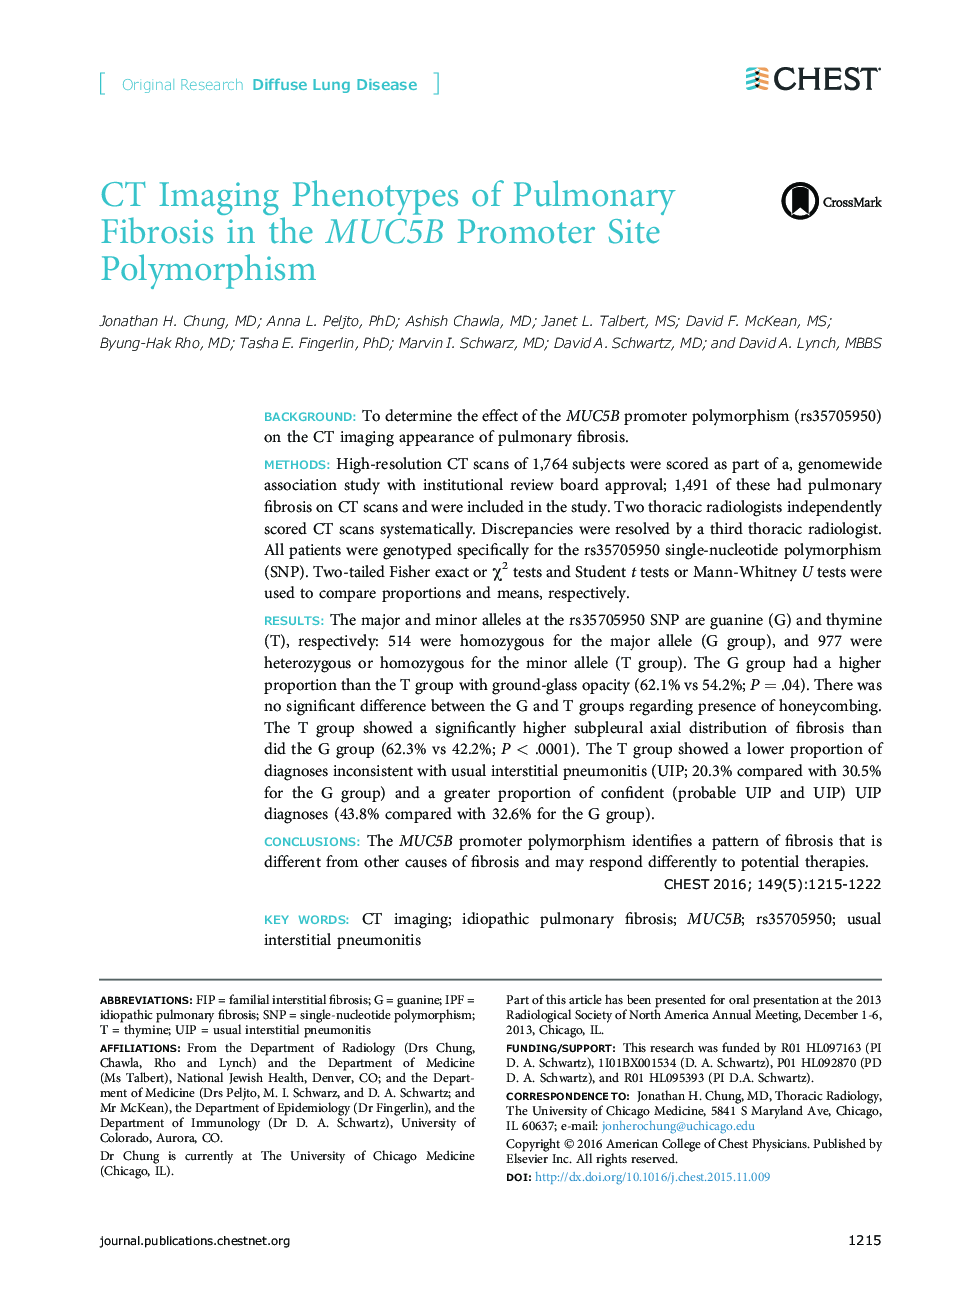 فنوتیپ های تصویربرداری CT از فیبروز ریوی در پلی مورفیسم سایت پروموتر MUC5B 